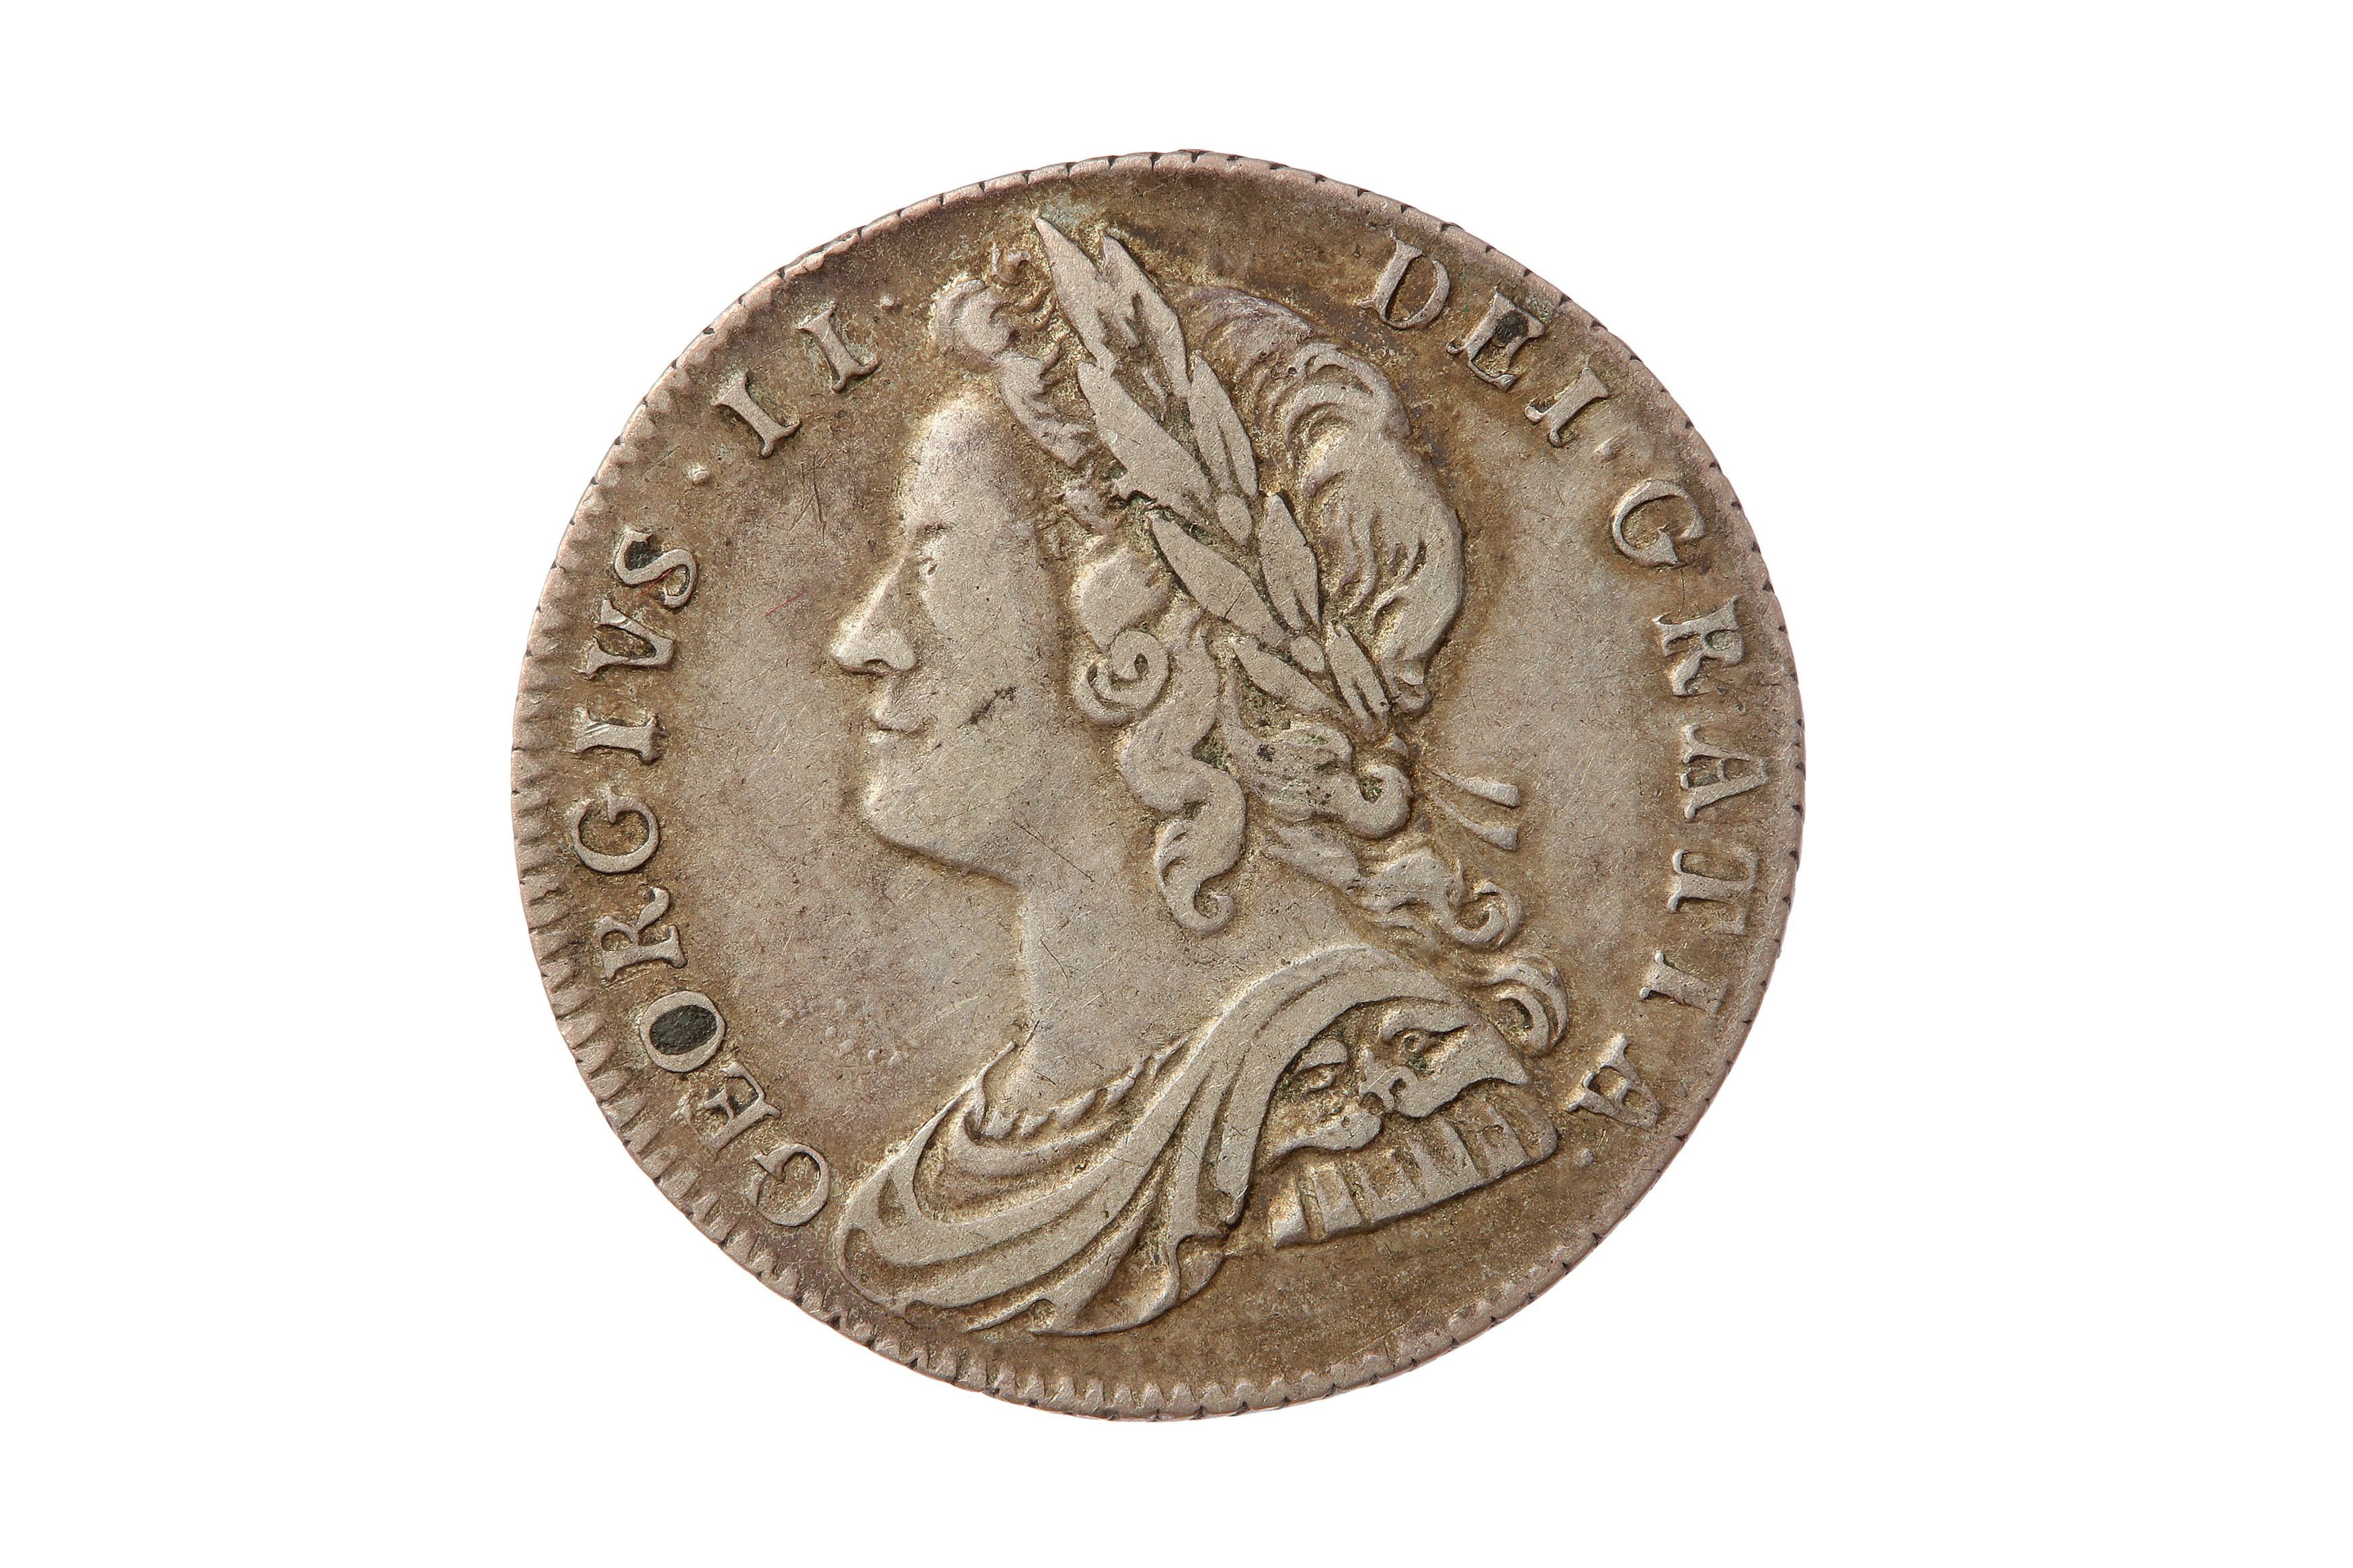 GEORGE II (1727 - 1760), 1728 SIXPENCE.